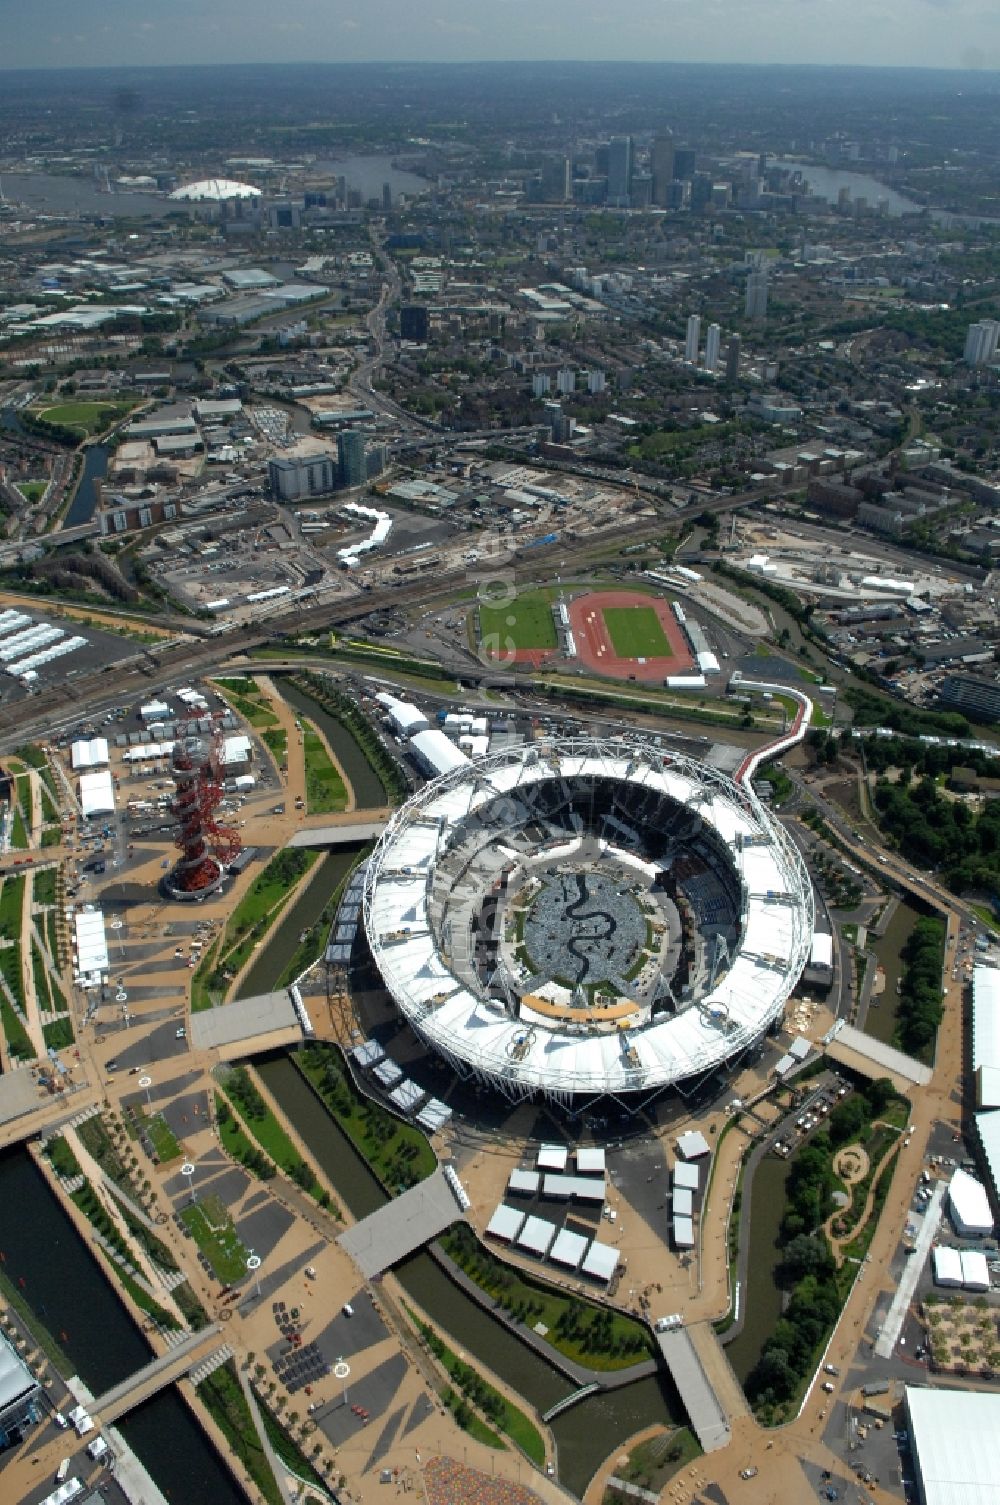 London von oben - Olympiastadion London im Olympiapark und ein Austragungsort der Olympischen Spiele 2012